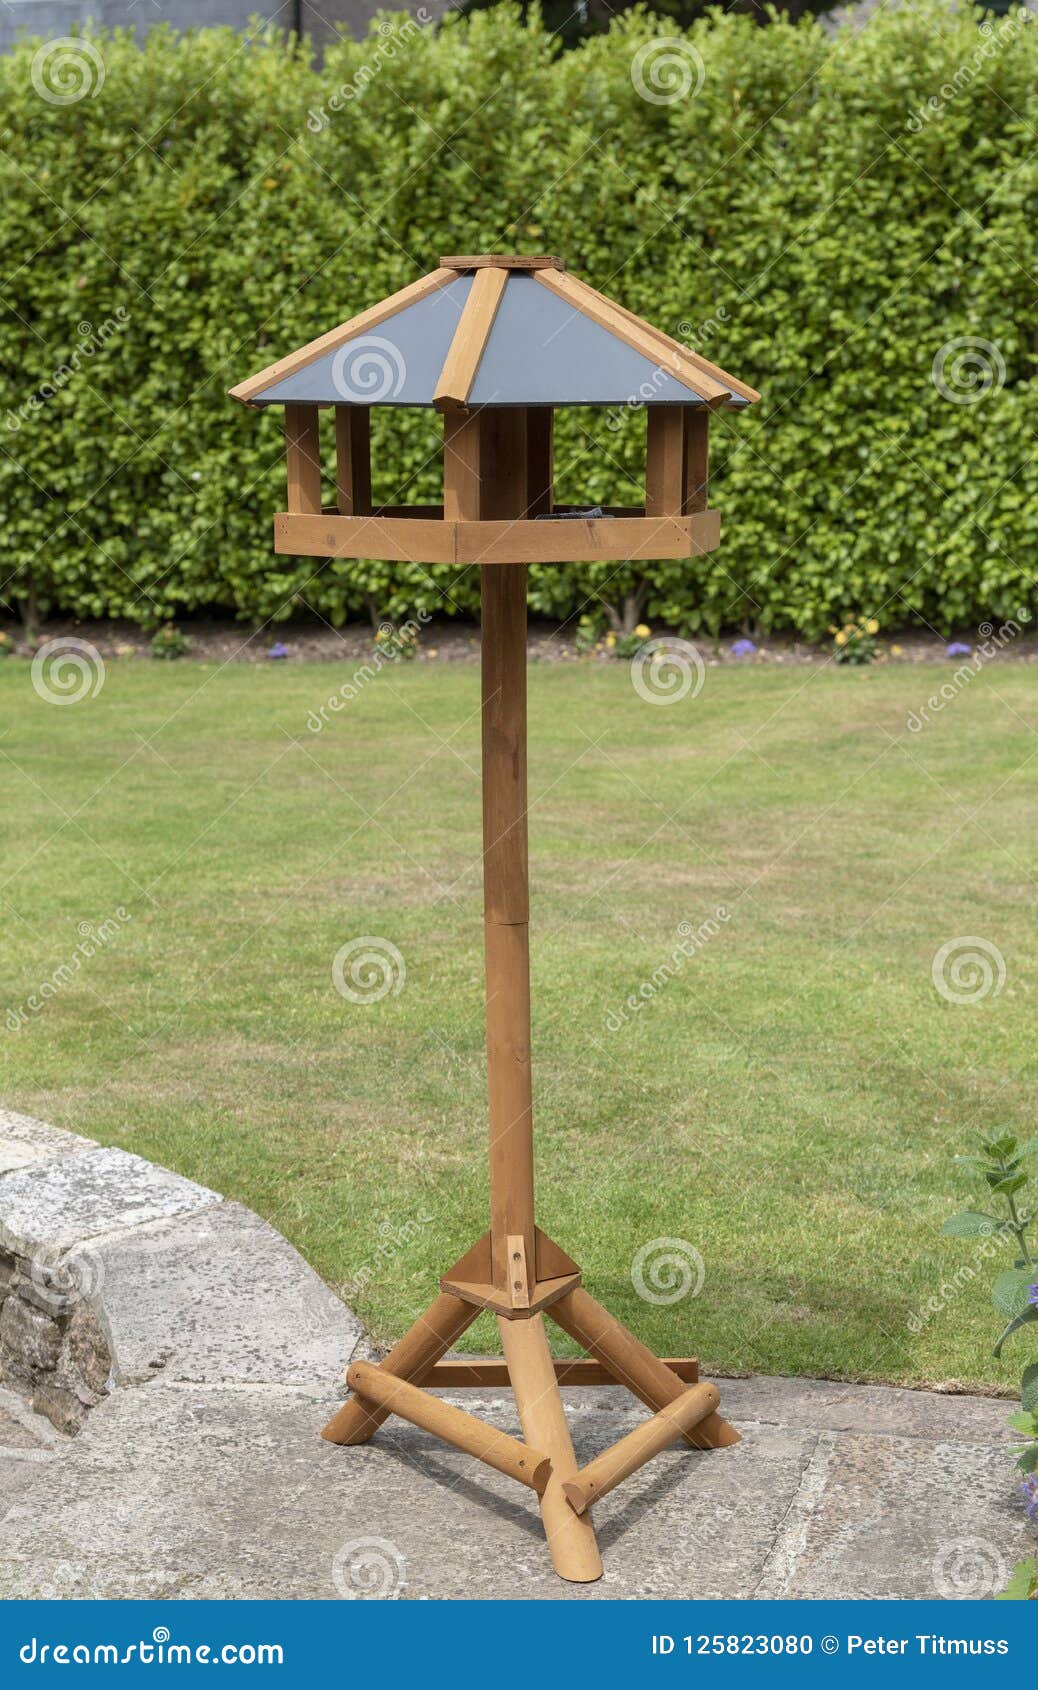 Wooden Bird Feeder Standing On A Garden Patio Stock Photo ...